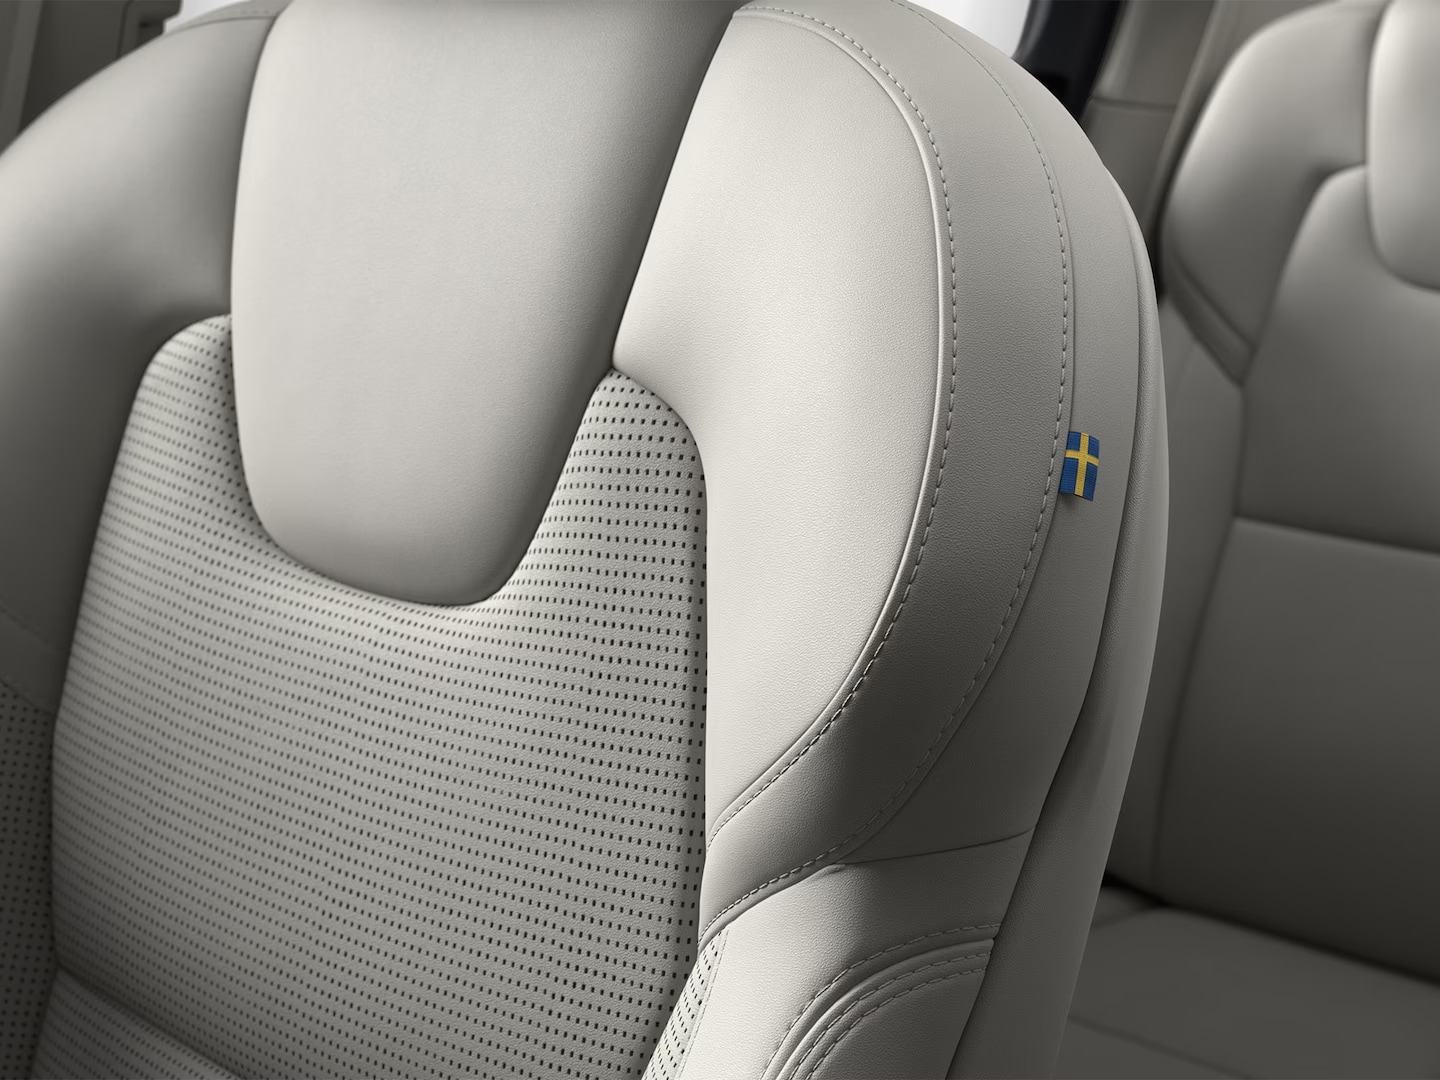 Groothoekbeeld van de zeven zachte stoelen in nappaleder in het interieur van de Volvo XC90 mild hybrid SUV.